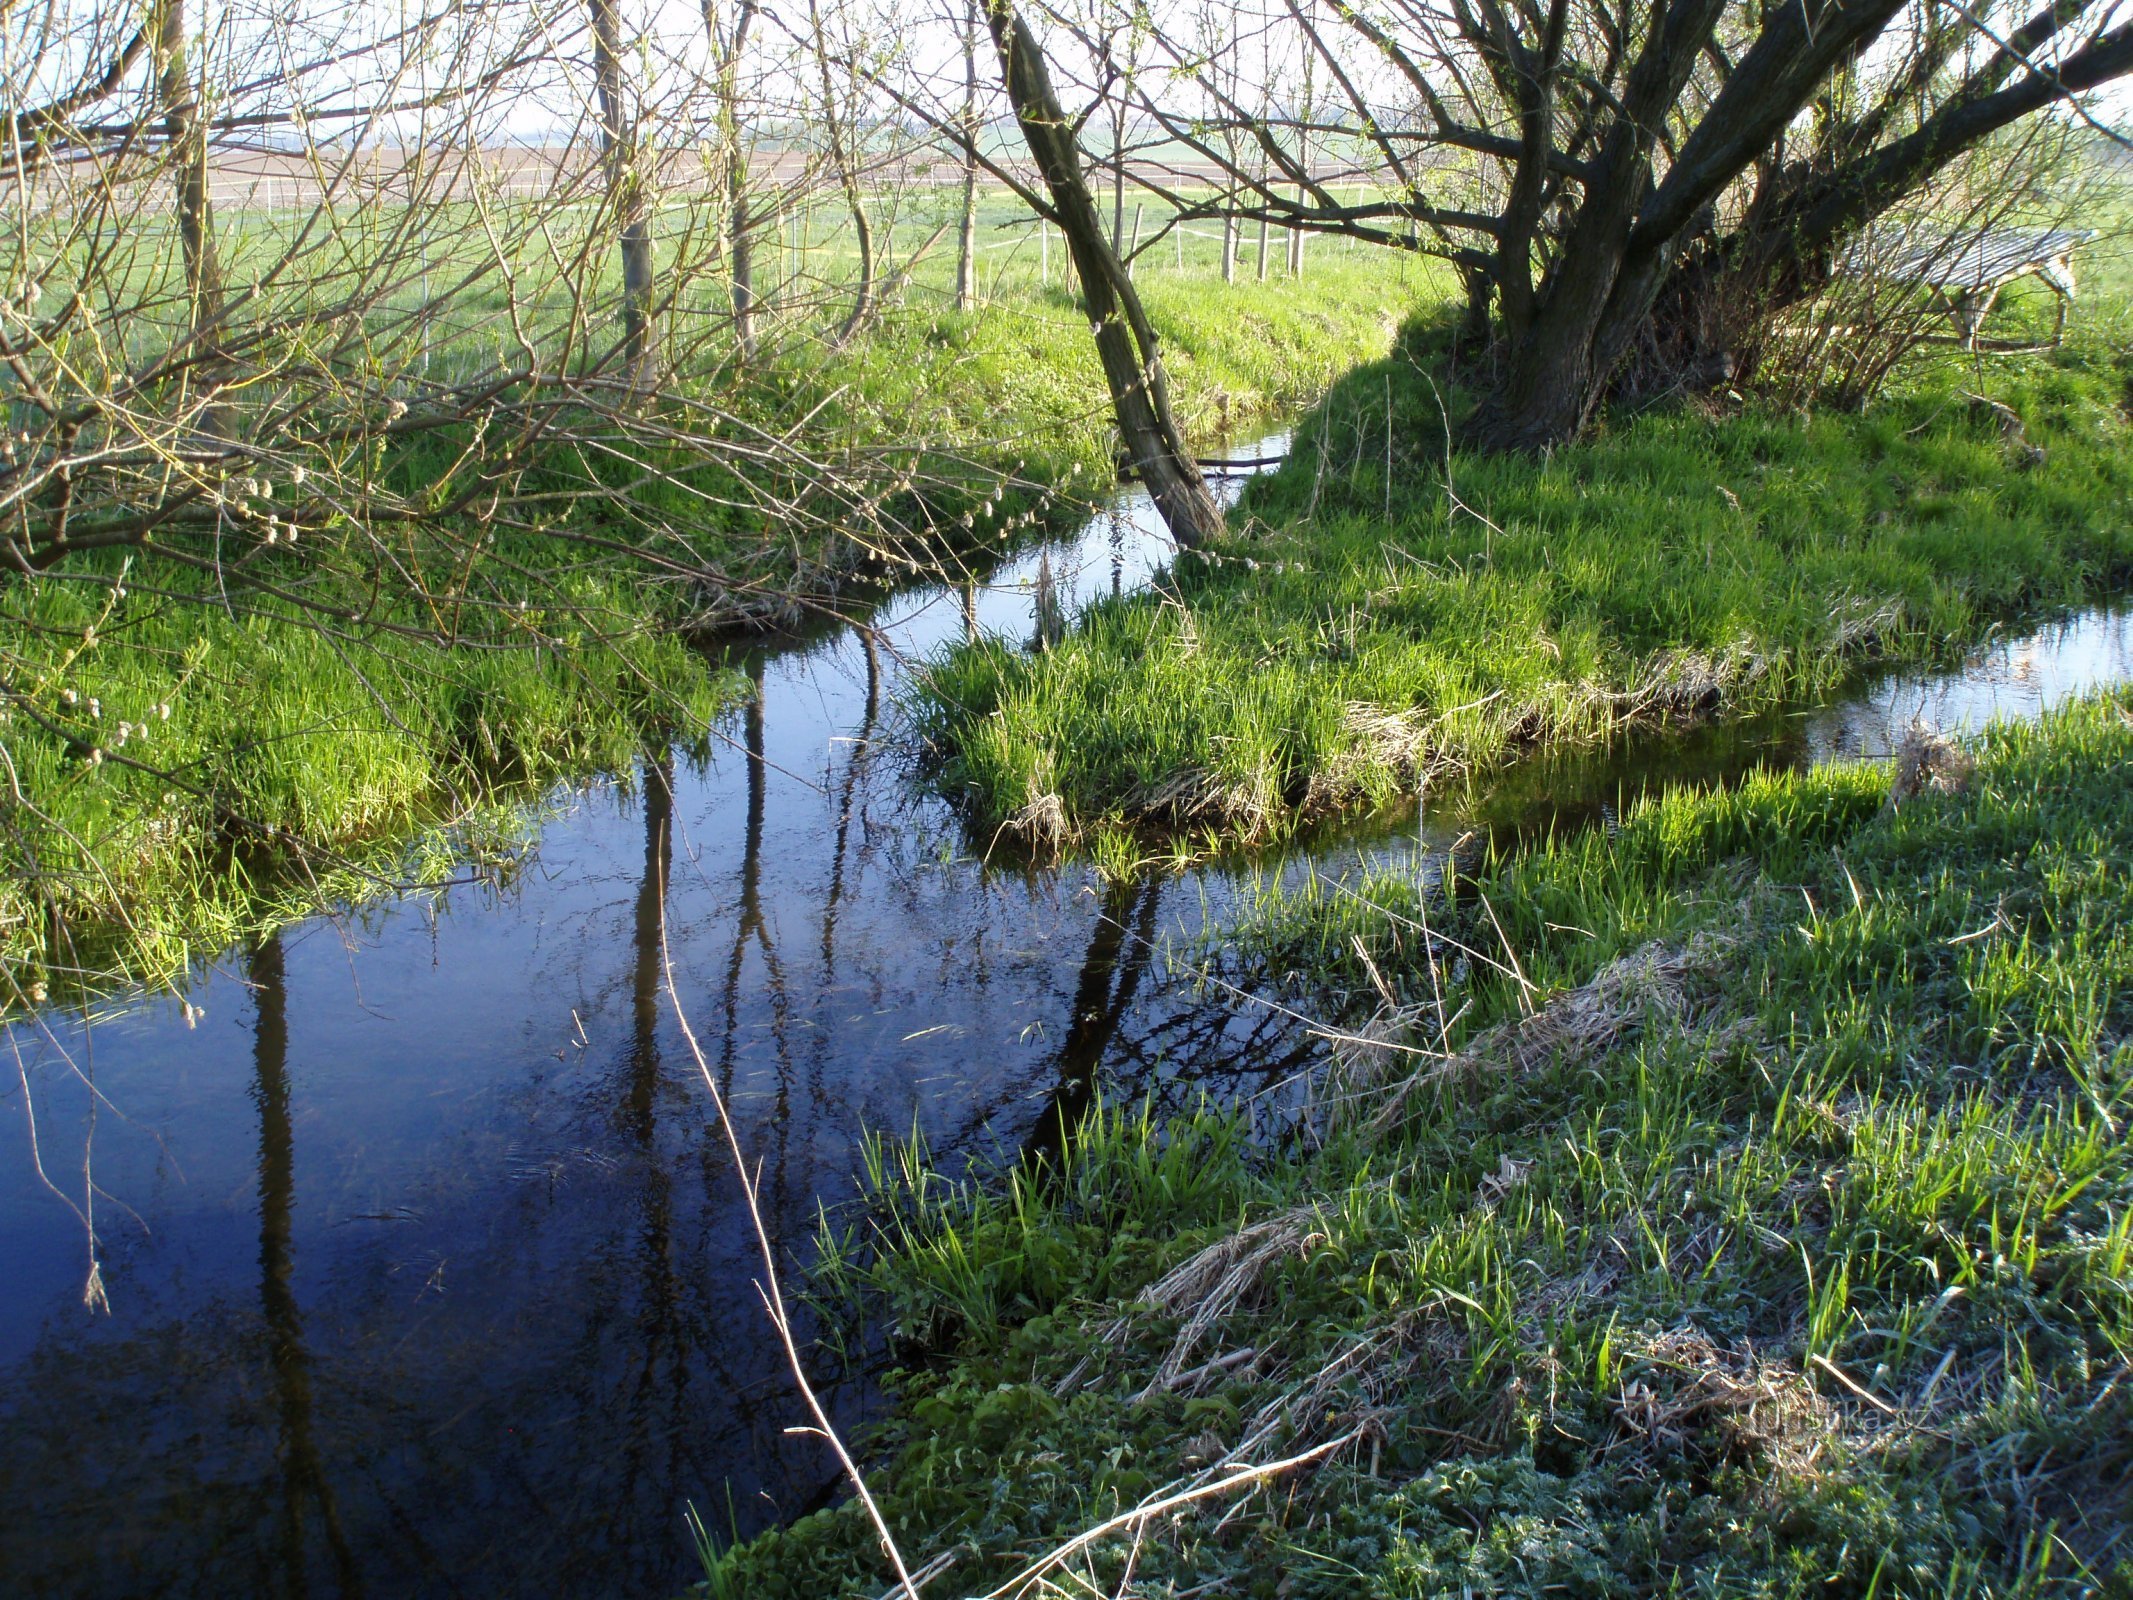 Confluencia de los arroyos Černilovského y Librantický, comienzo del arroyo Piletický (Rusek)